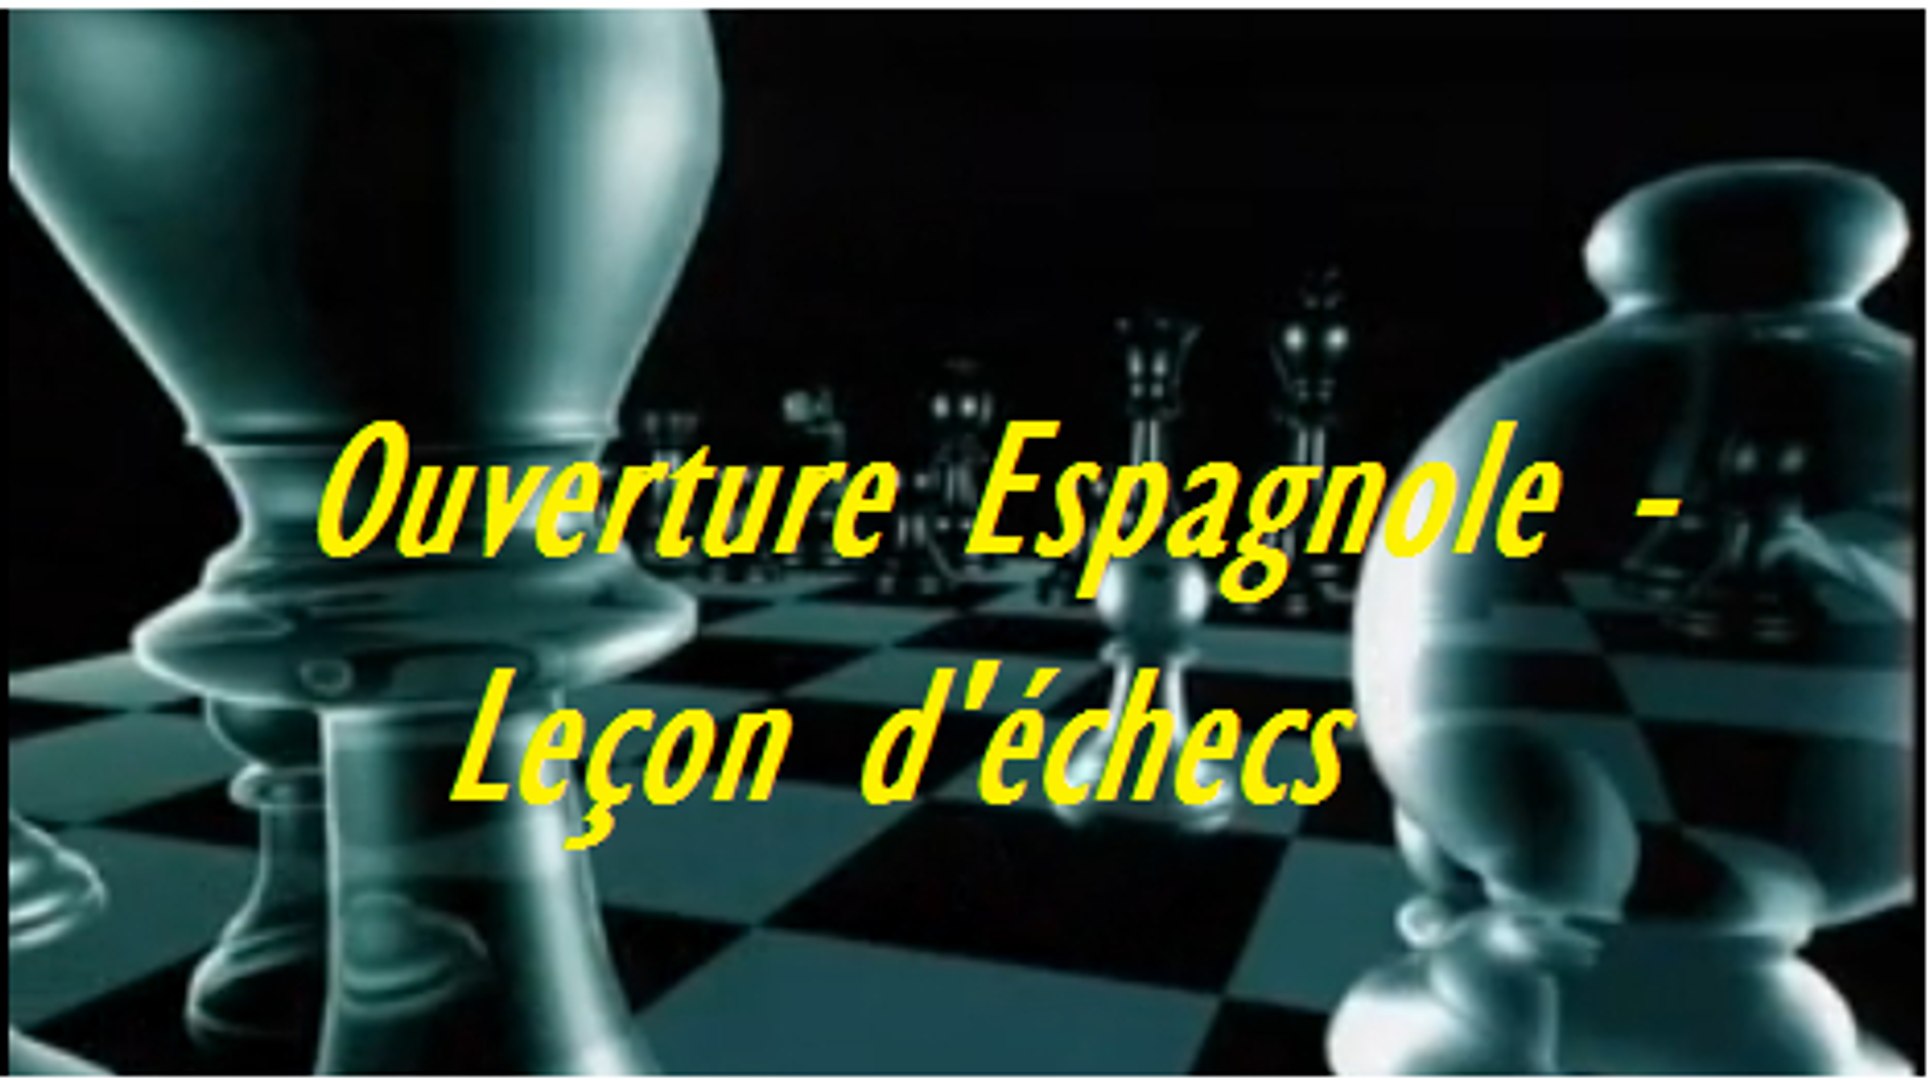 L'Ouverture Espagnole - Leçon du jeu d'échecs - Vidéo Dailymotion